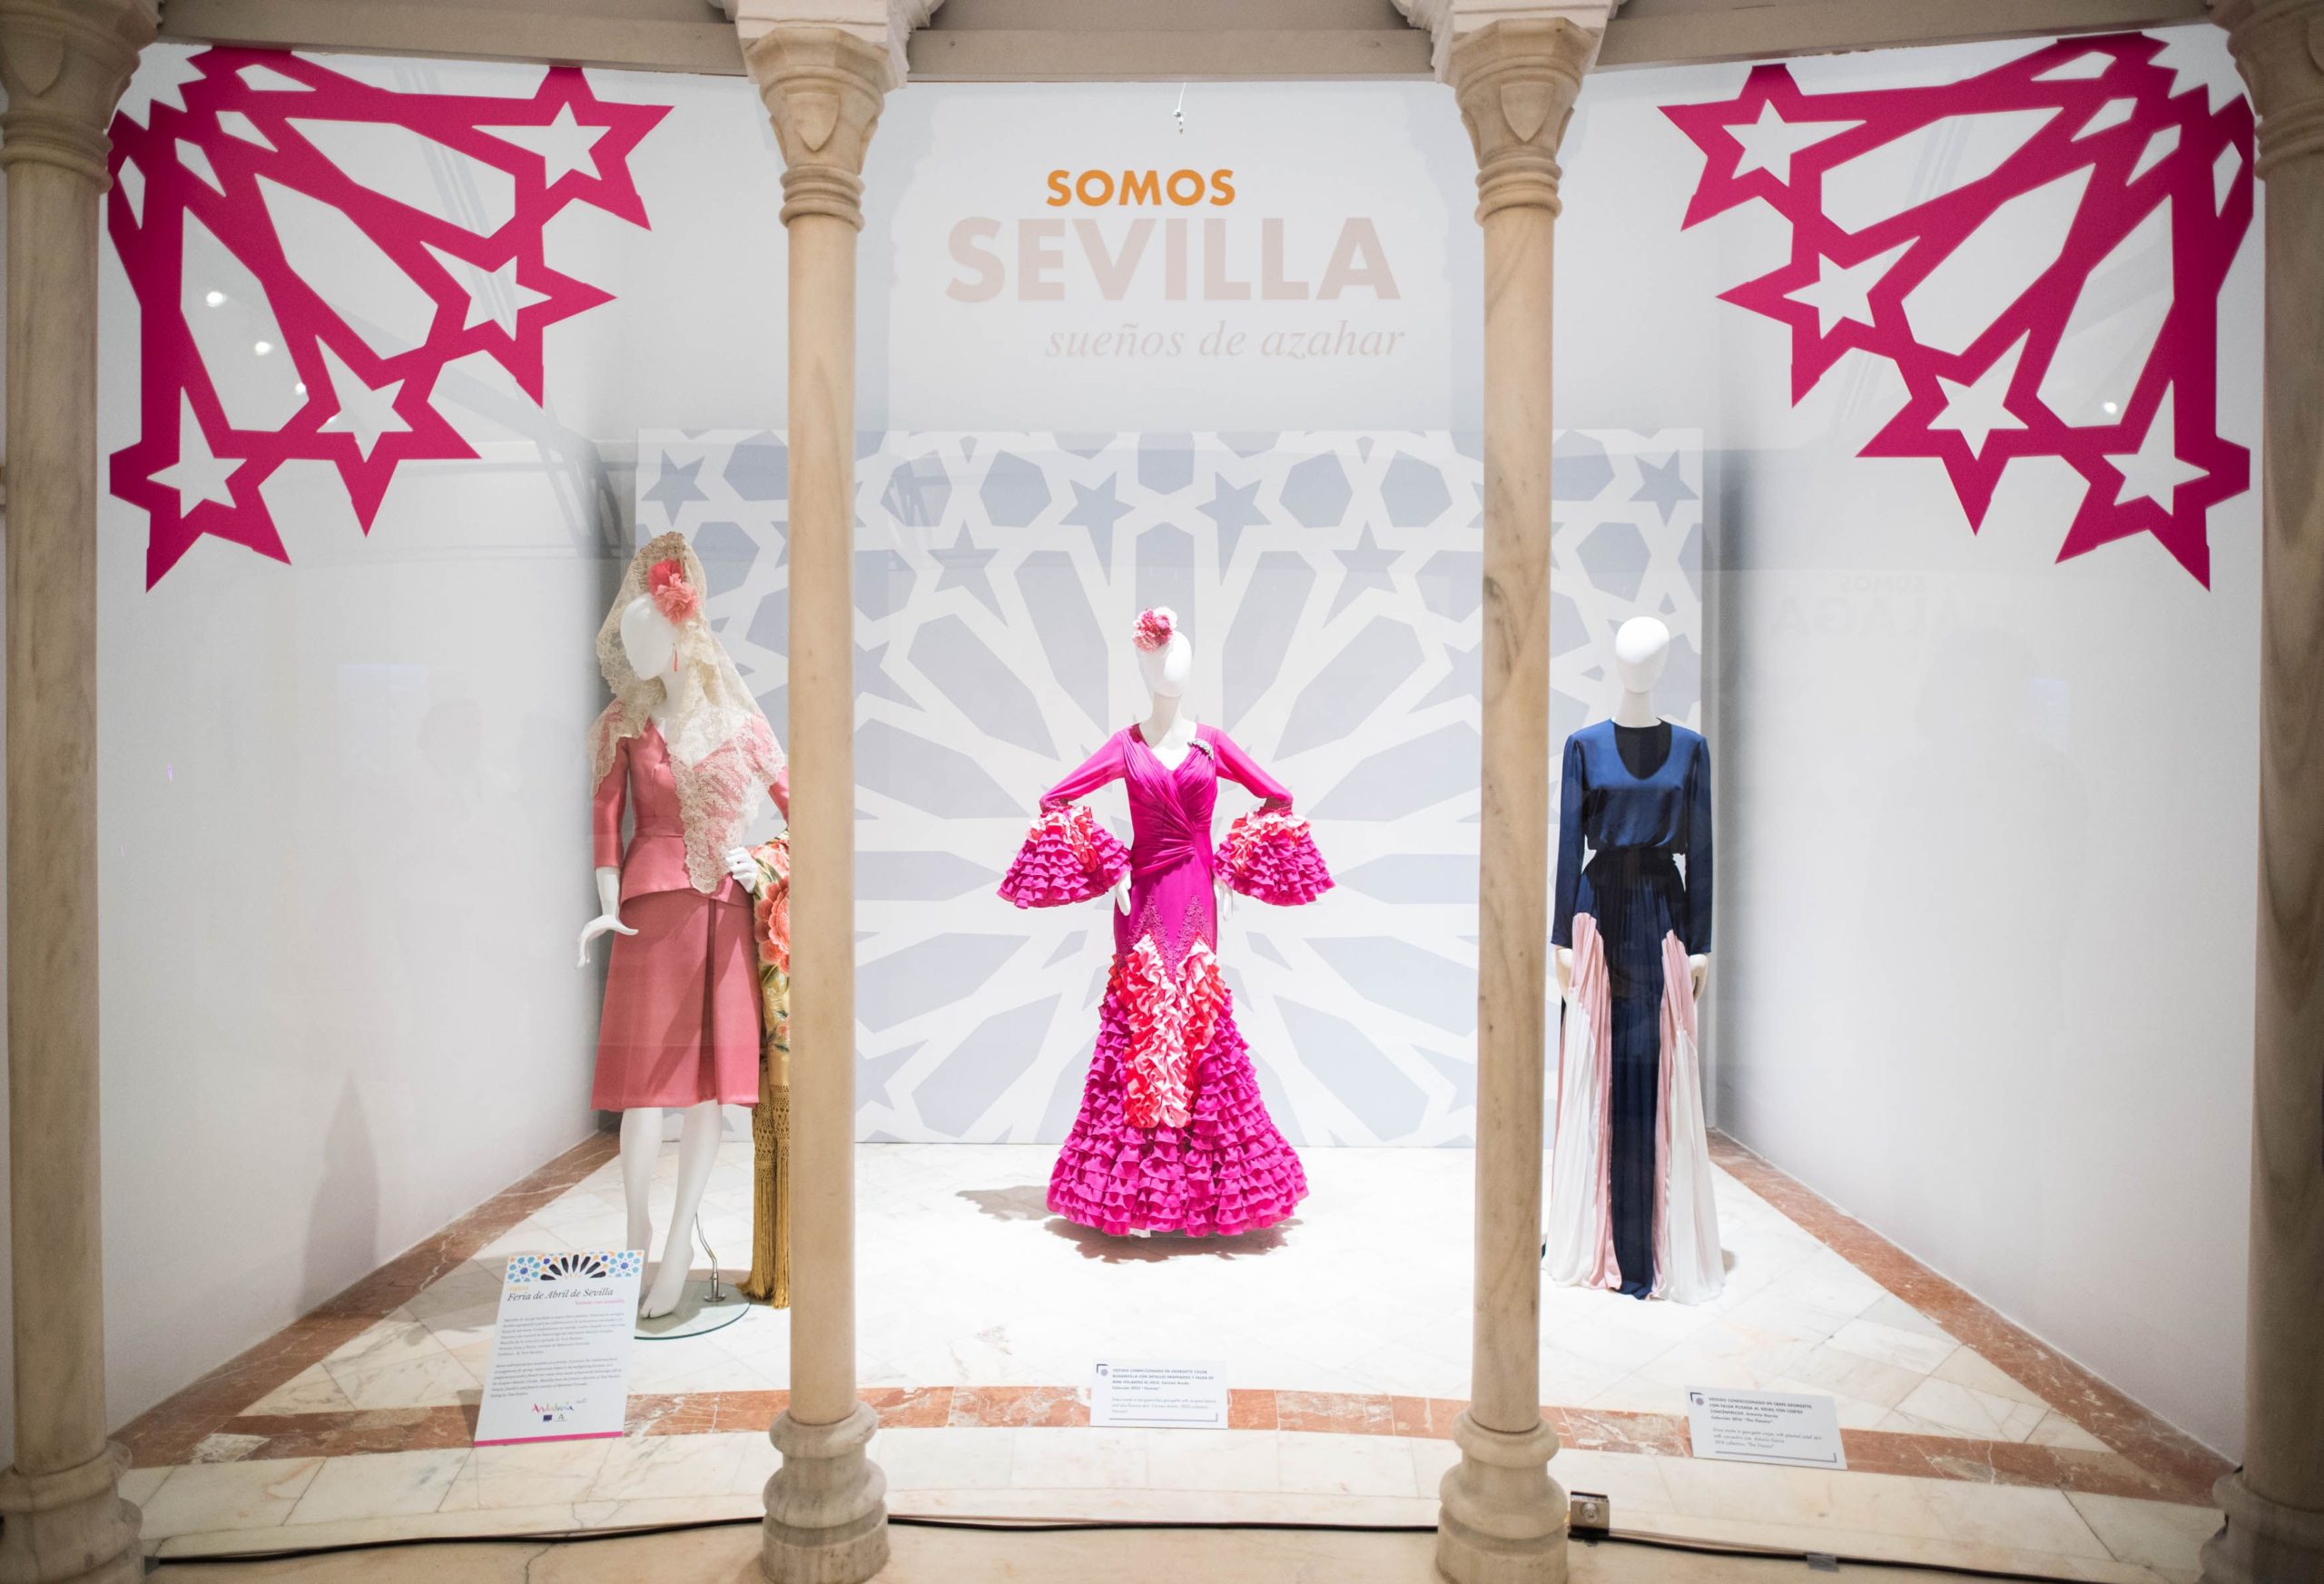 Expositor de Sevilla en la exposición de Somos Abril.